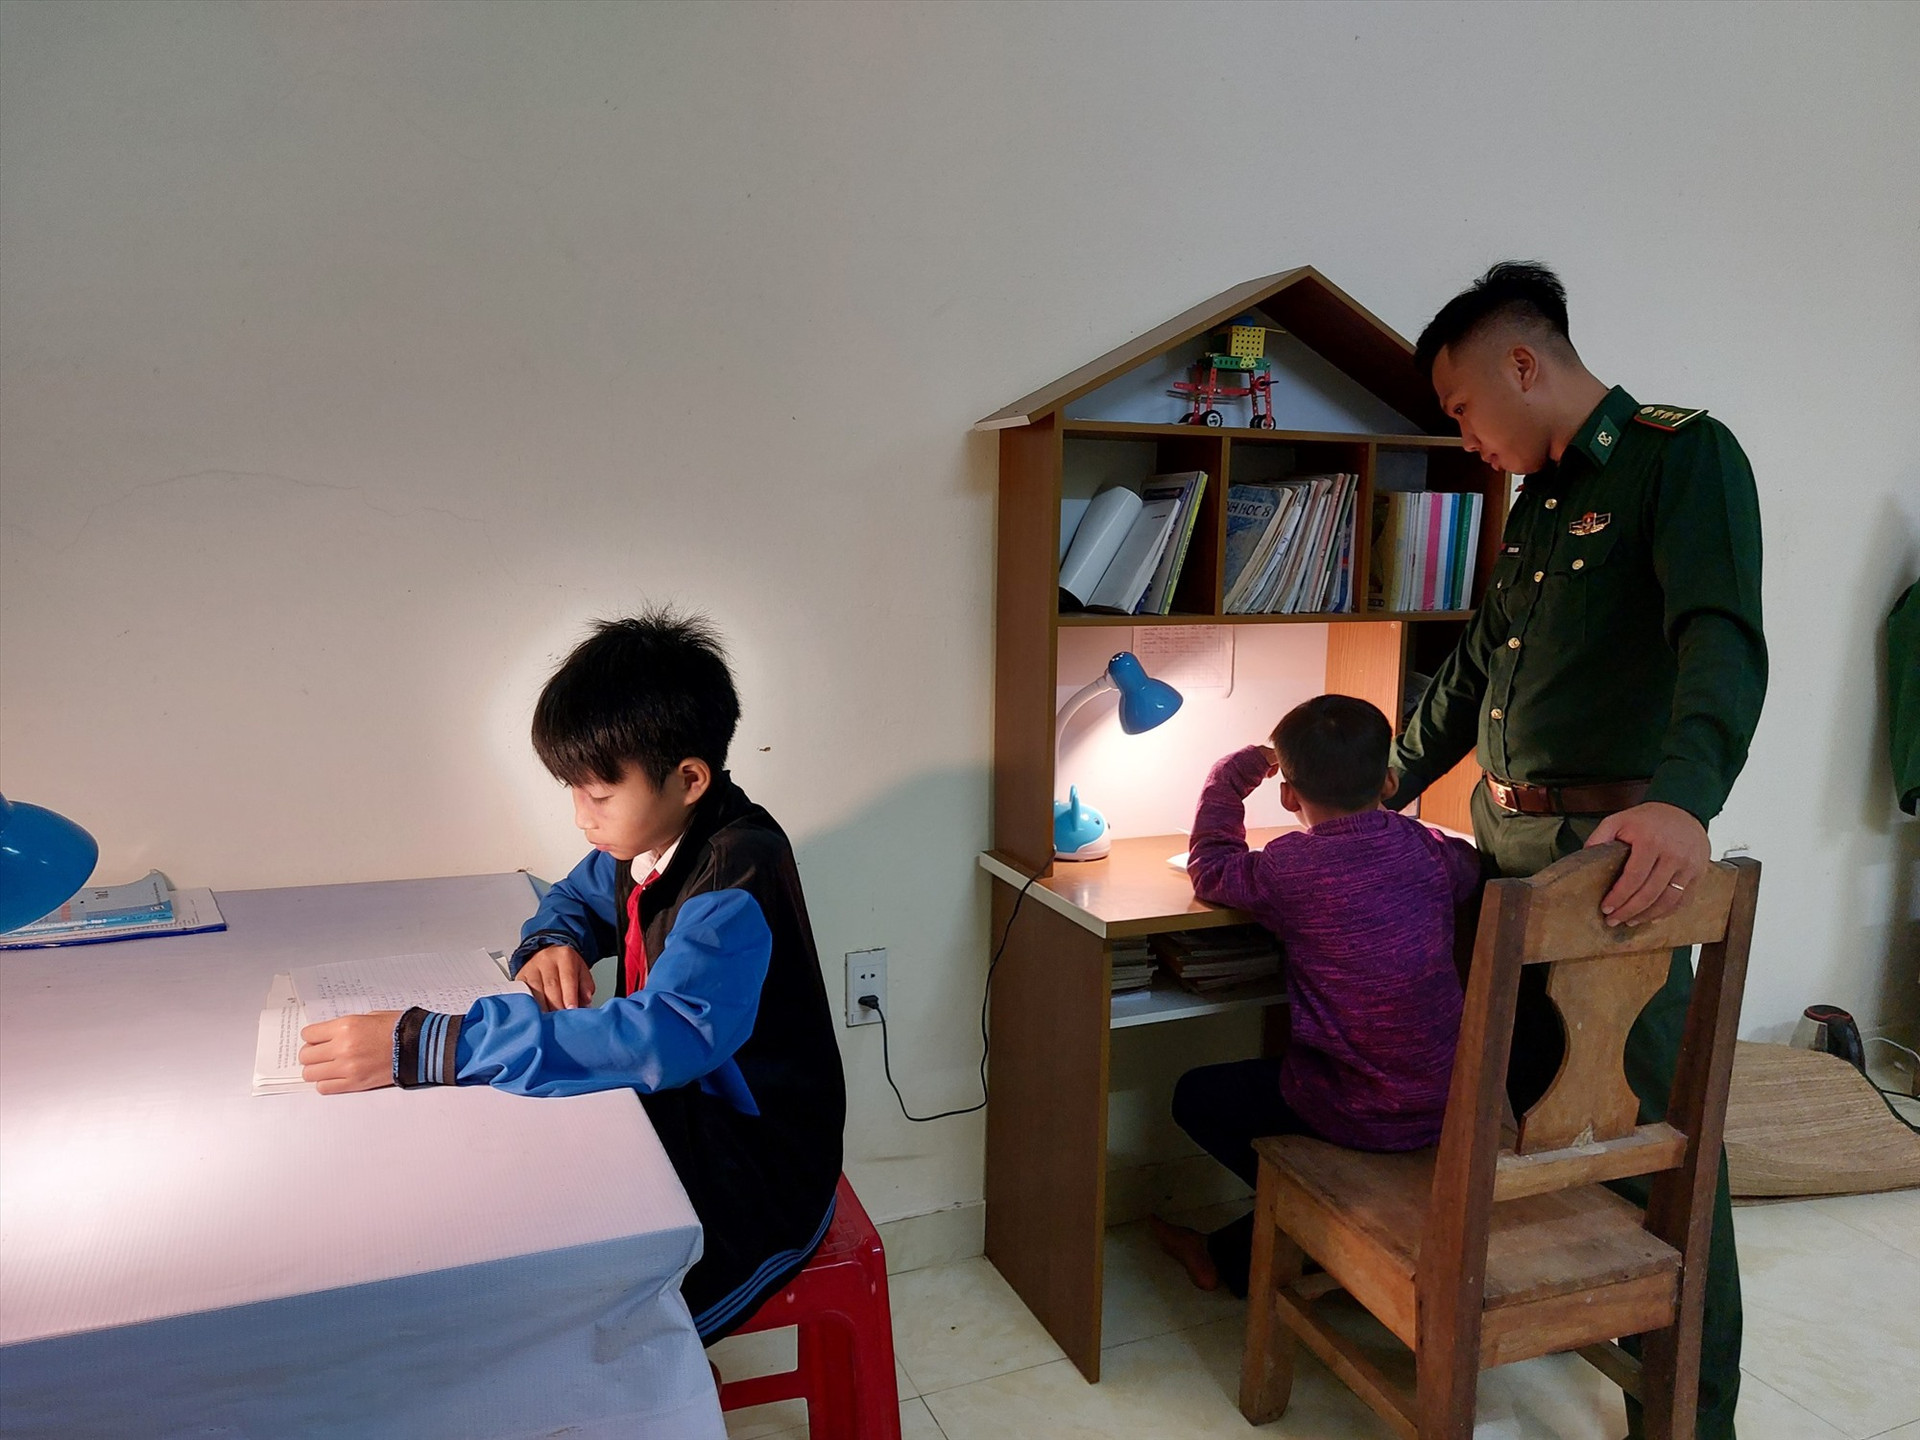 Hơn 3 năm gắn bố với biên giới, cũng chừng đó thời gian Thượng úy Lê Minh Sơn làm nhiệm vụ dạy học cho “con nuôi biên phòng“. Ảnh: Đ.N